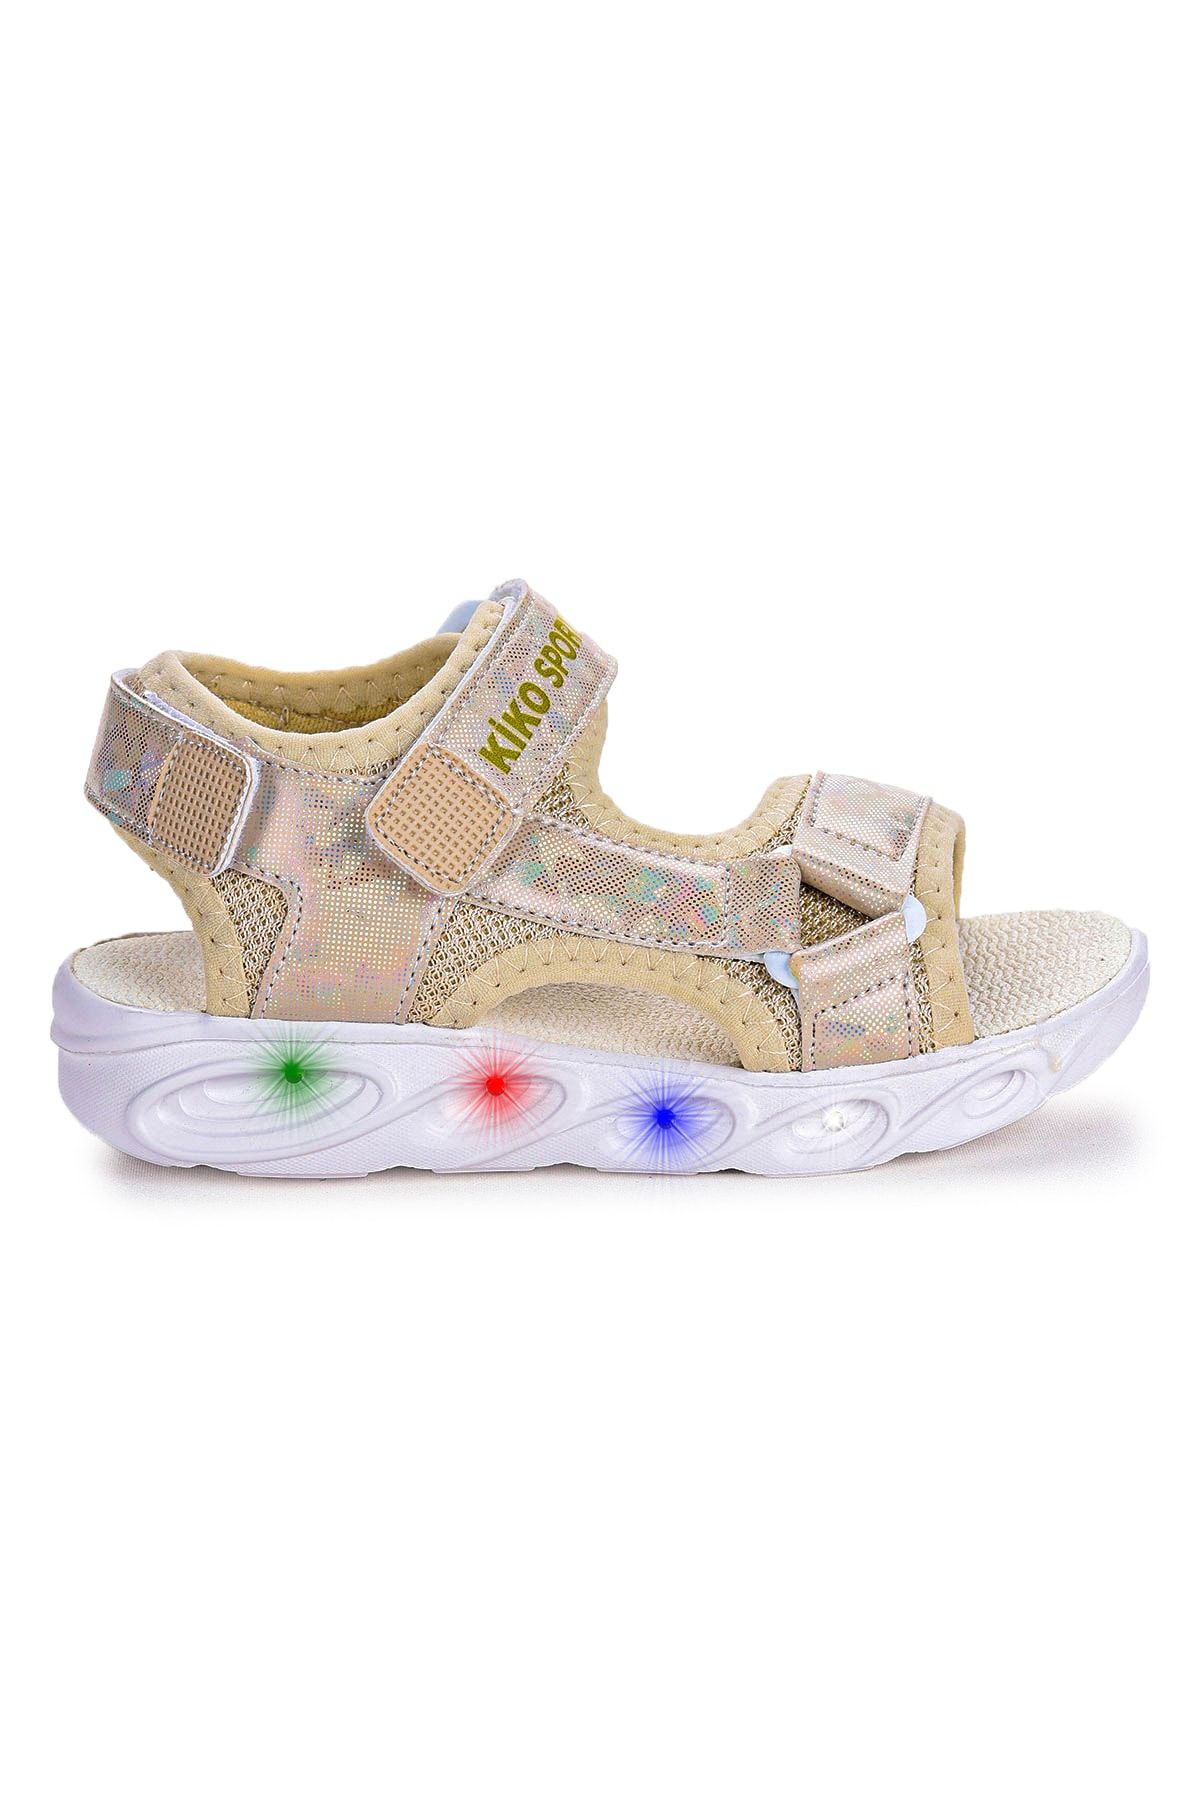 Kiko Kids 133 Hologram Işıklı Günlük Kız Çocuk Cırtlı Sandalet Ayakkabı